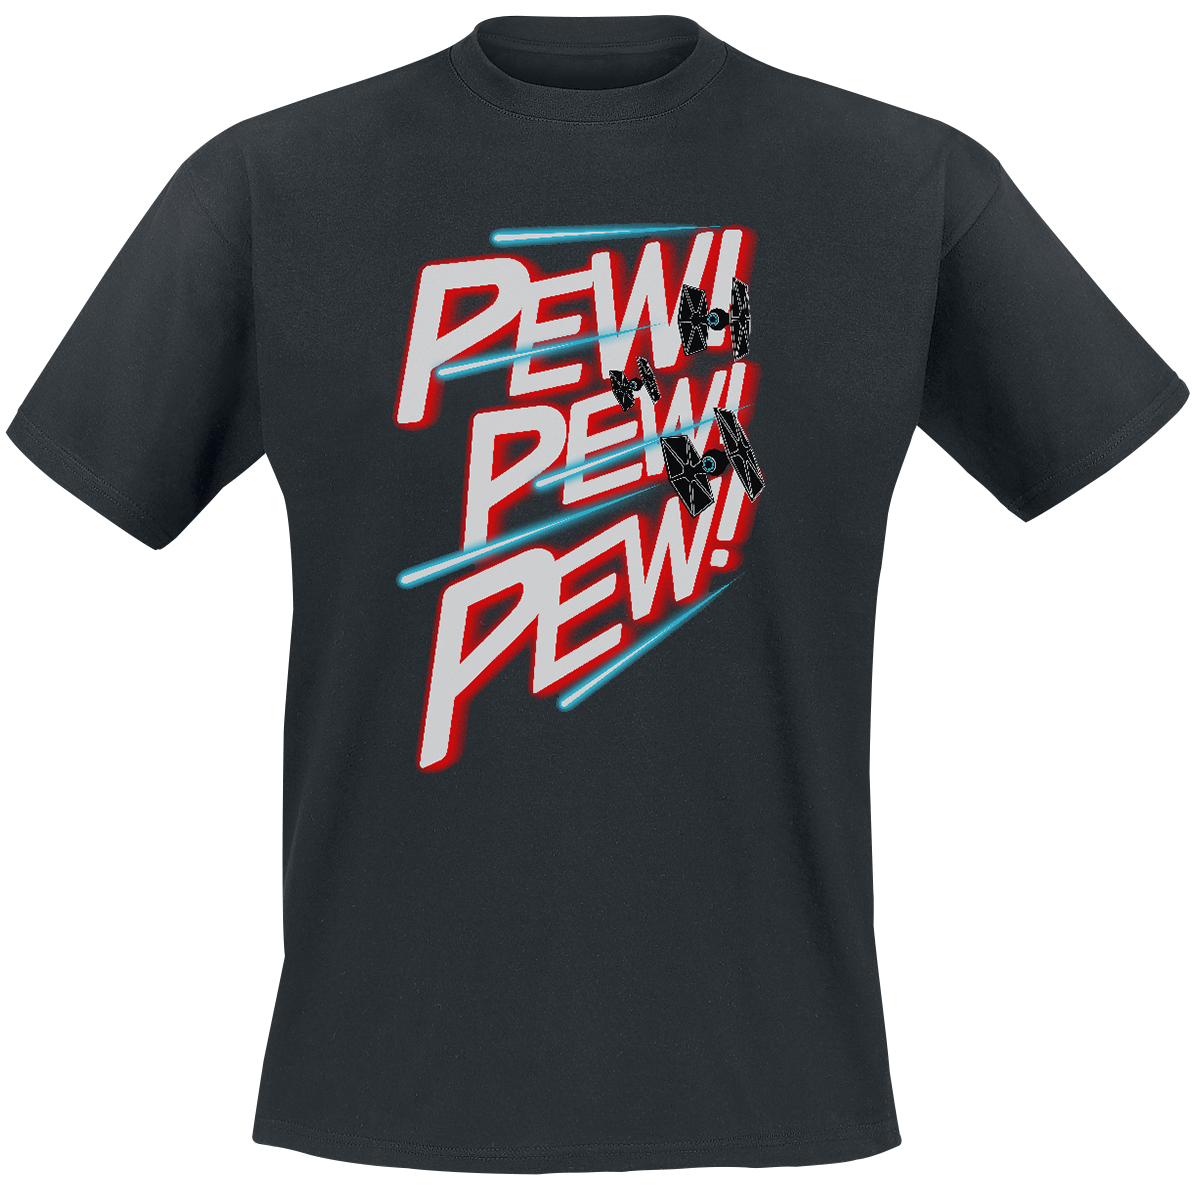 Star Wars - PEW PEW PEW - T-Shirt - schwarz